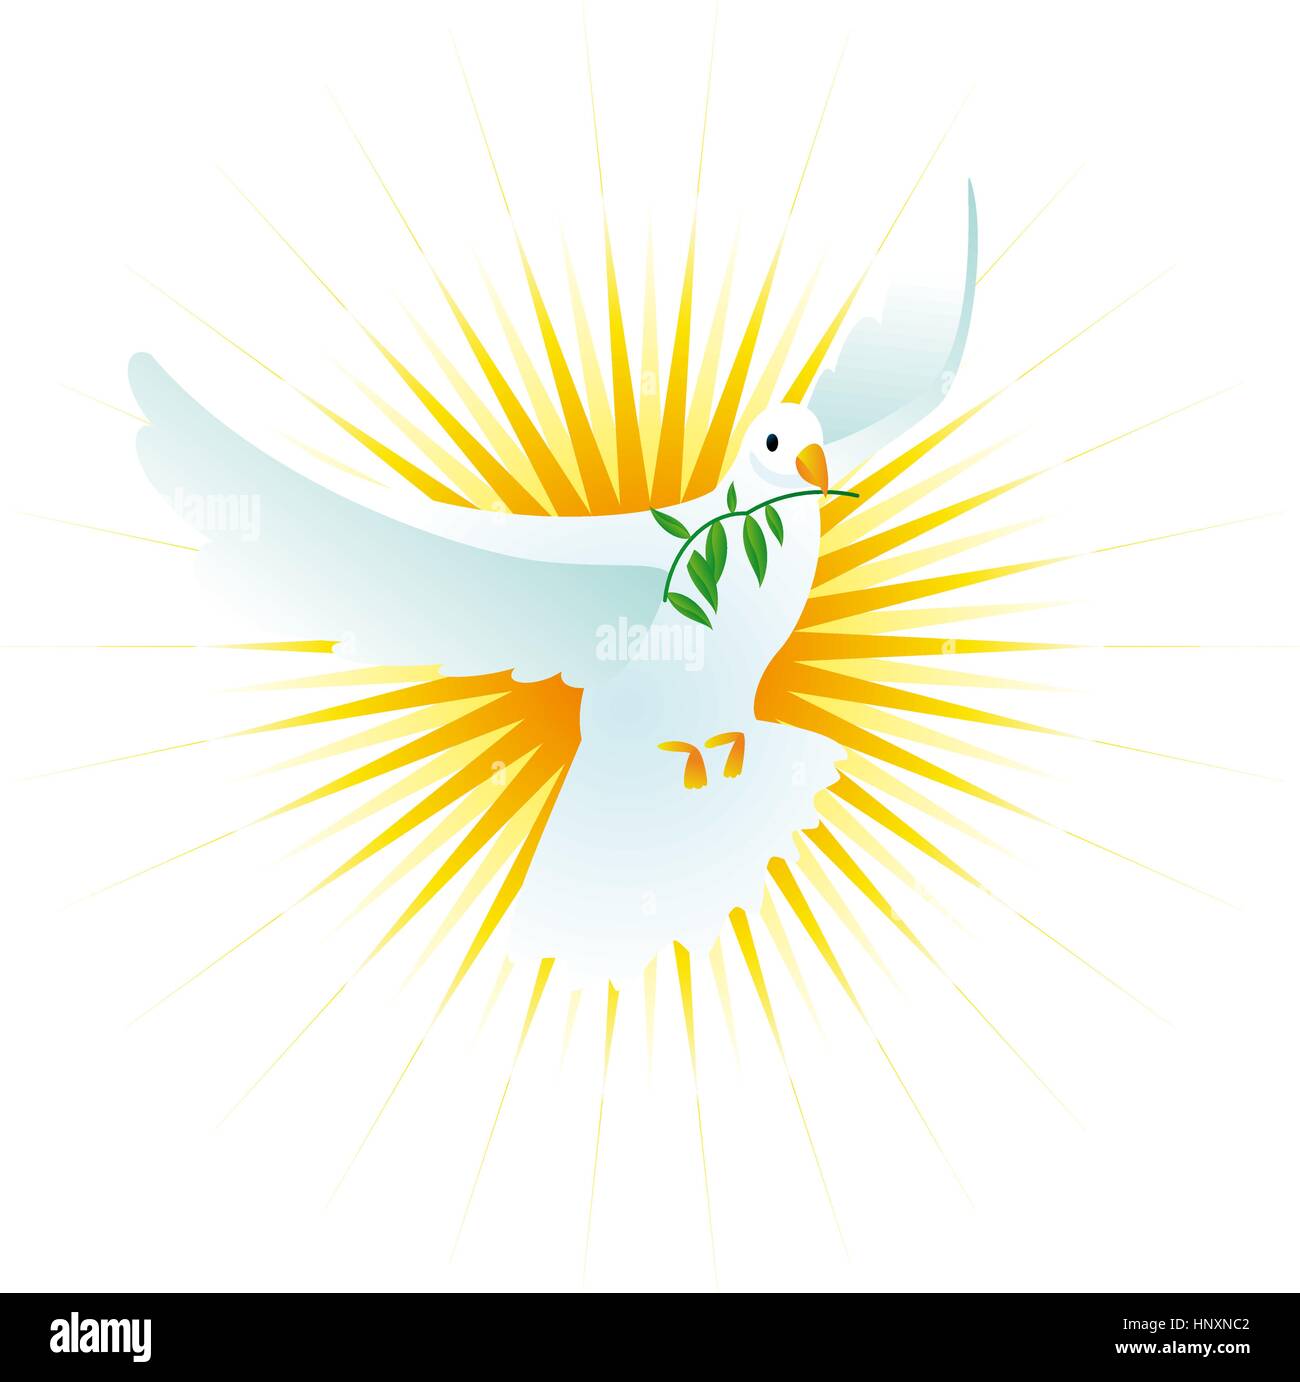 La pace dello spirito santo colomba, illustrazione realistica, possono essere utilizzati con fini religiosi troppo. Illustrazione Vettoriale